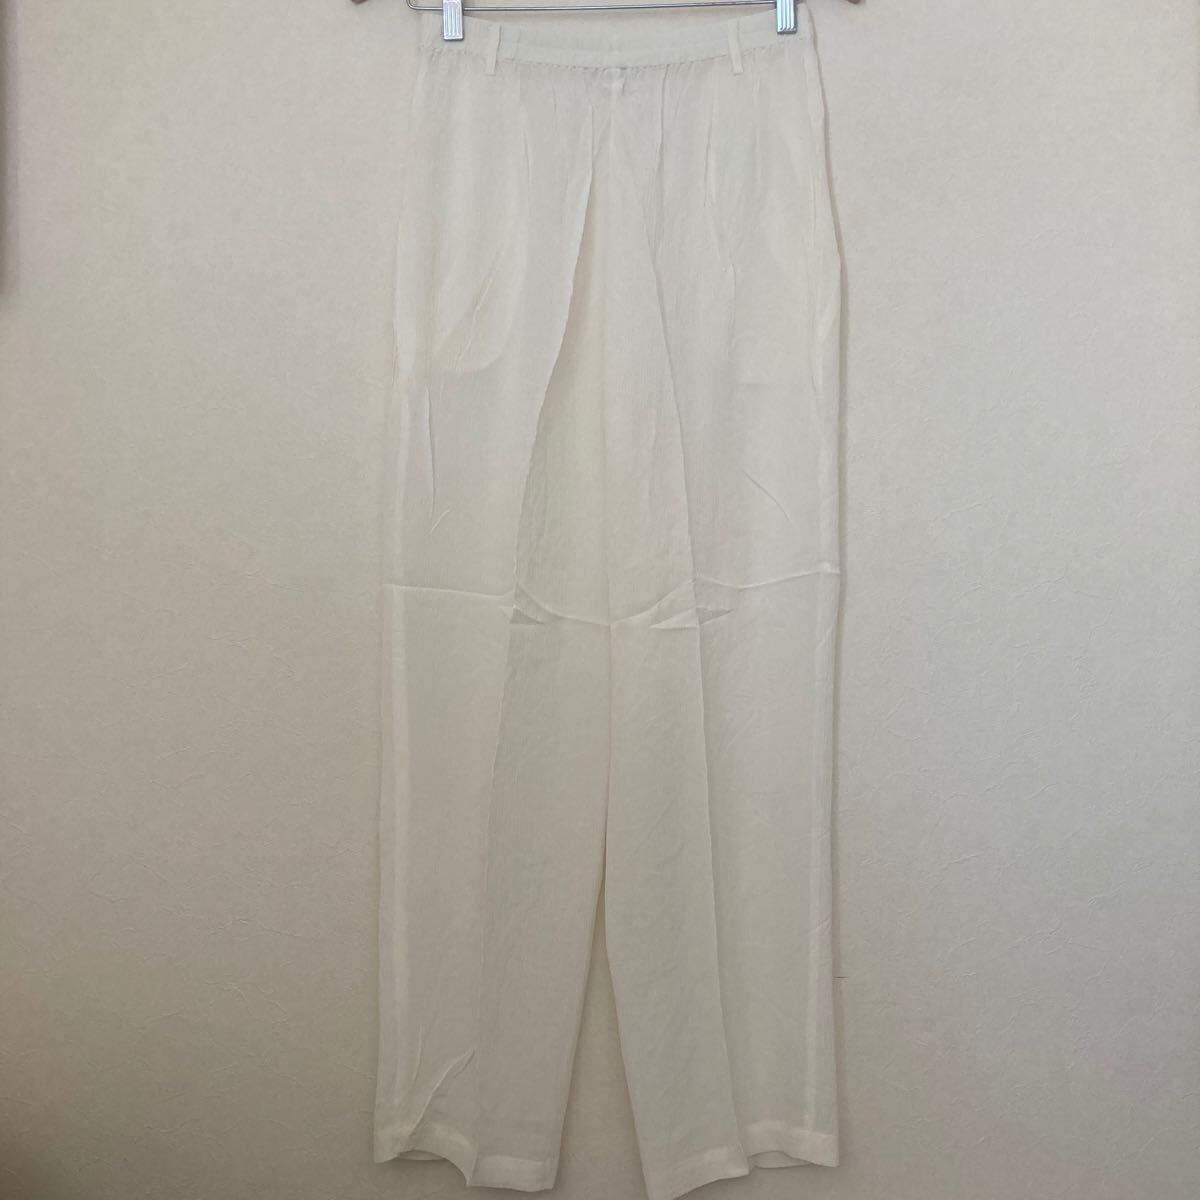 イージーパンツ メンズ ウエストゴム ボトムス ズボン パンツ フリーサイズ ホワイト 白 シルク100%_画像4